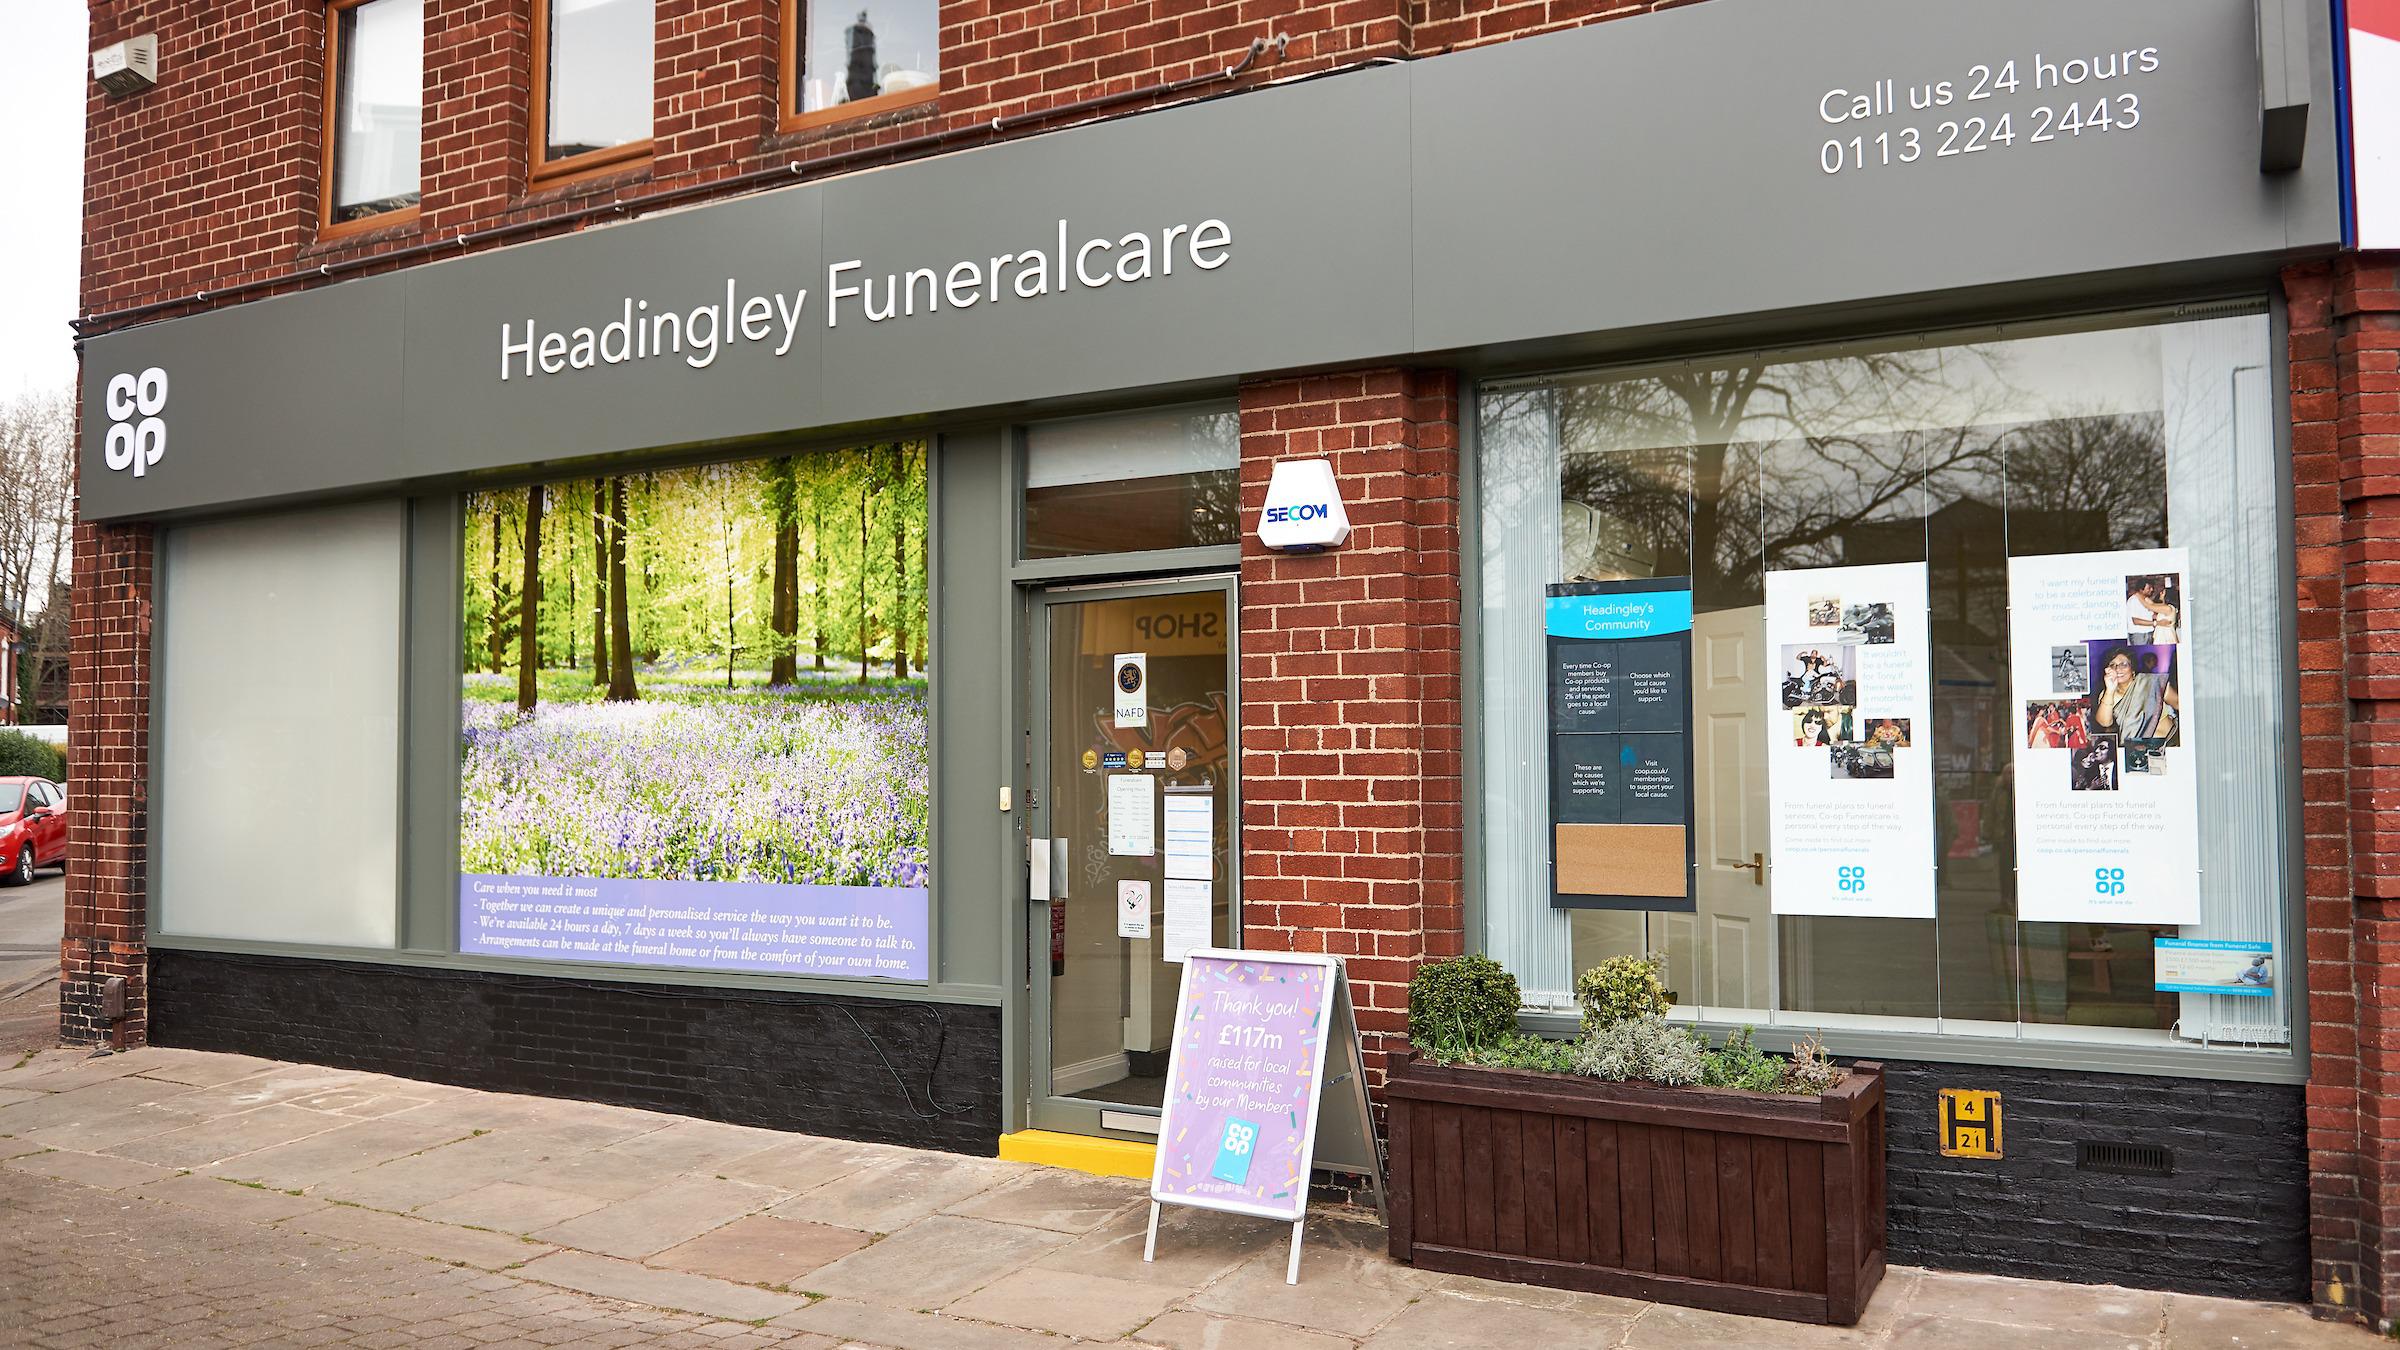 Co-op Funeralcare, Headingley - Funeral Directors Co-op Funeralcare, Headingley Leeds 01132 242443